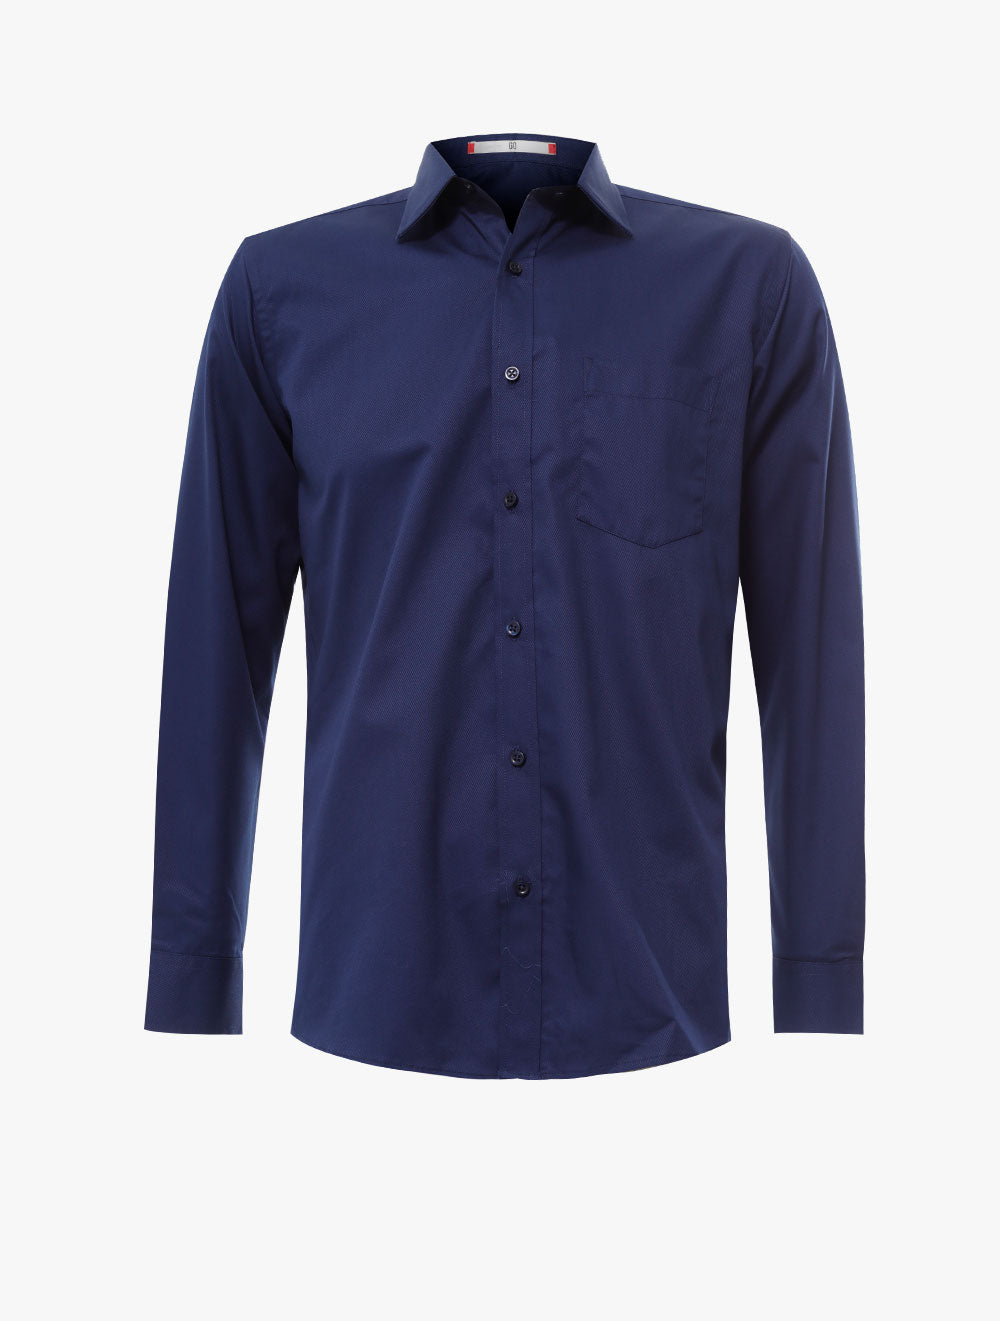 GQ
Modern Fit Long Sleeve Shirt - 2723058